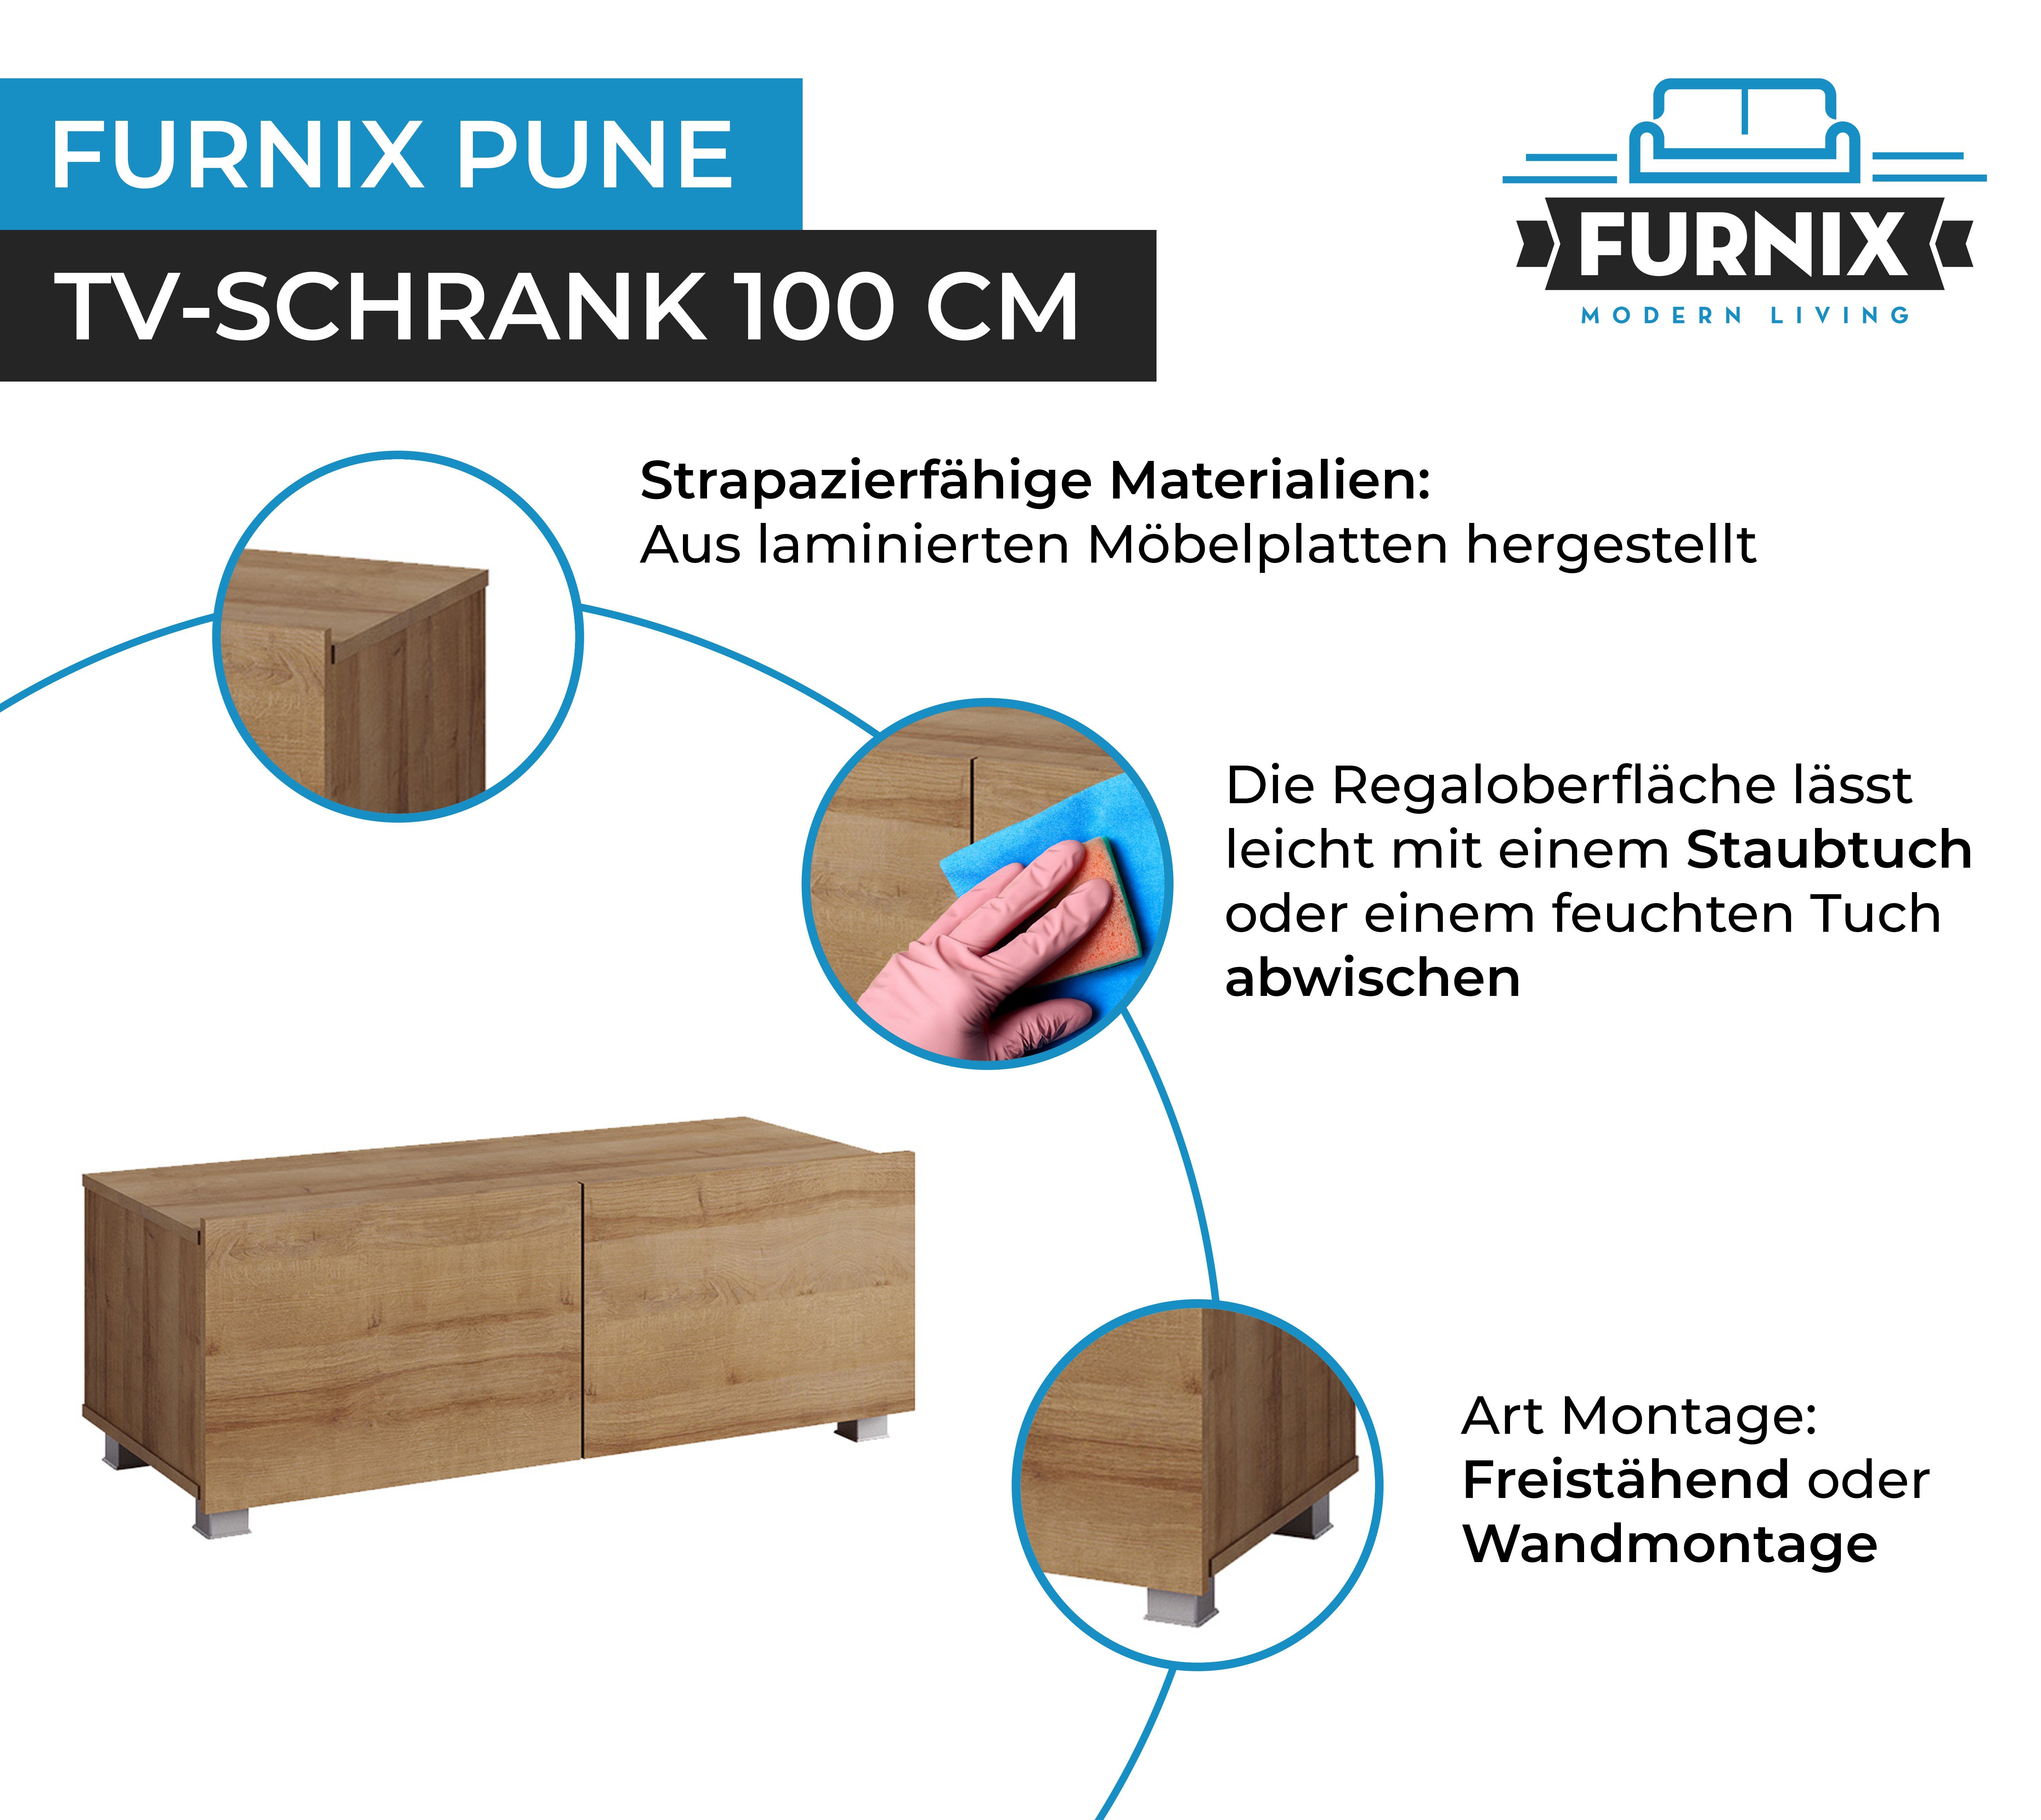 100 Wandmontage Eiche PUNE Wahl Furnix nach TV-Lowboard TV-Schrank Goldene Wohnzimmer oder freistähend fürs möglich